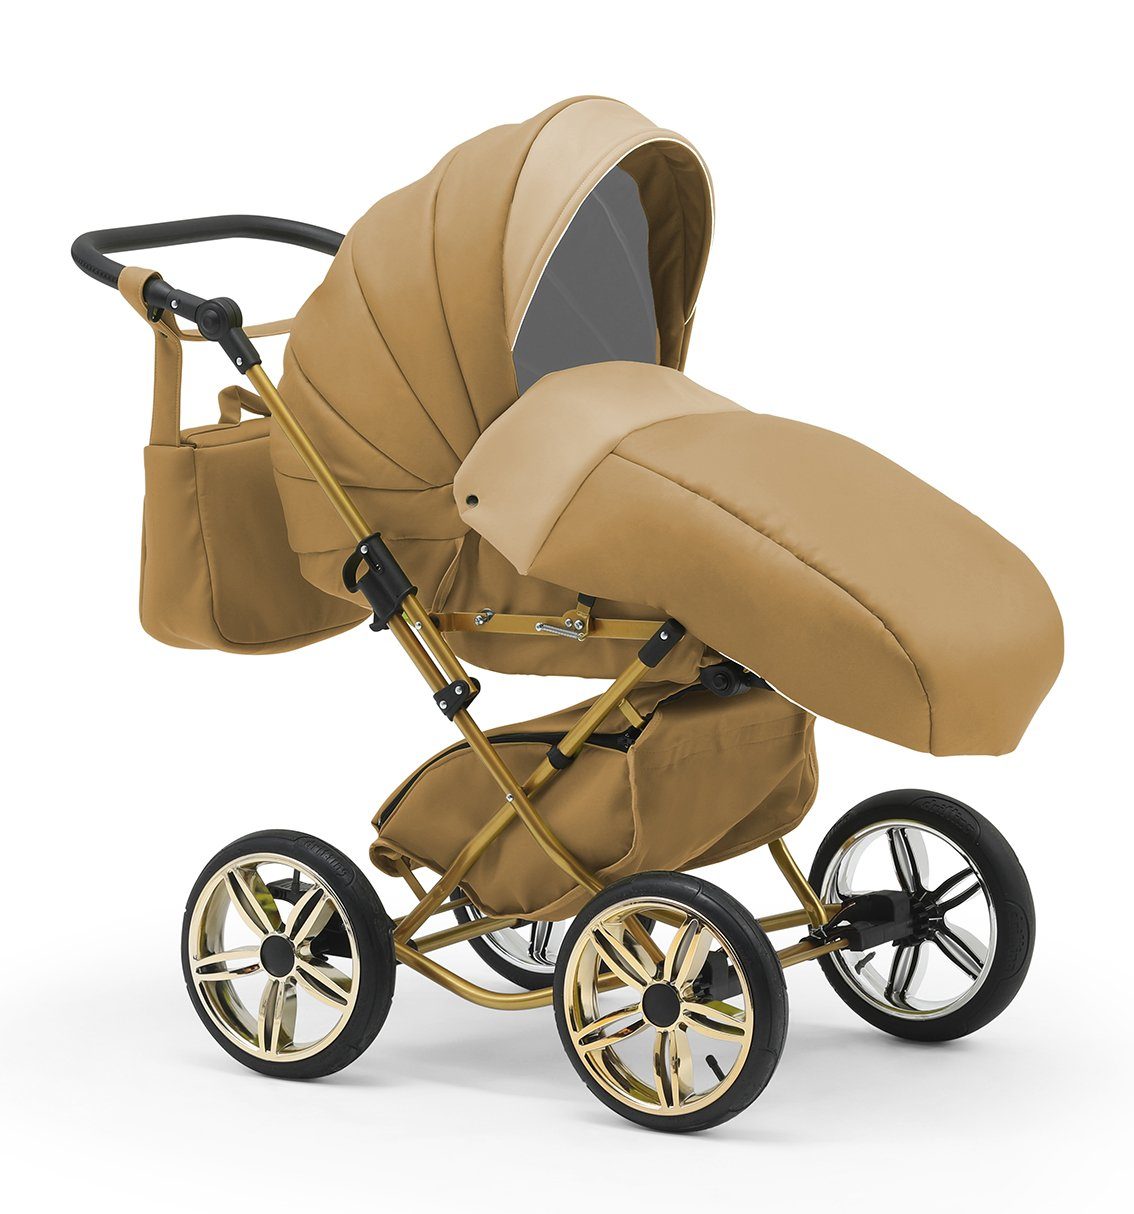 in Sorento babies-on-wheels inkl. Beige-Dunkelbeige Designs 13 1 Teile - in 3 Autositz - Kombi-Kinderwagen 10